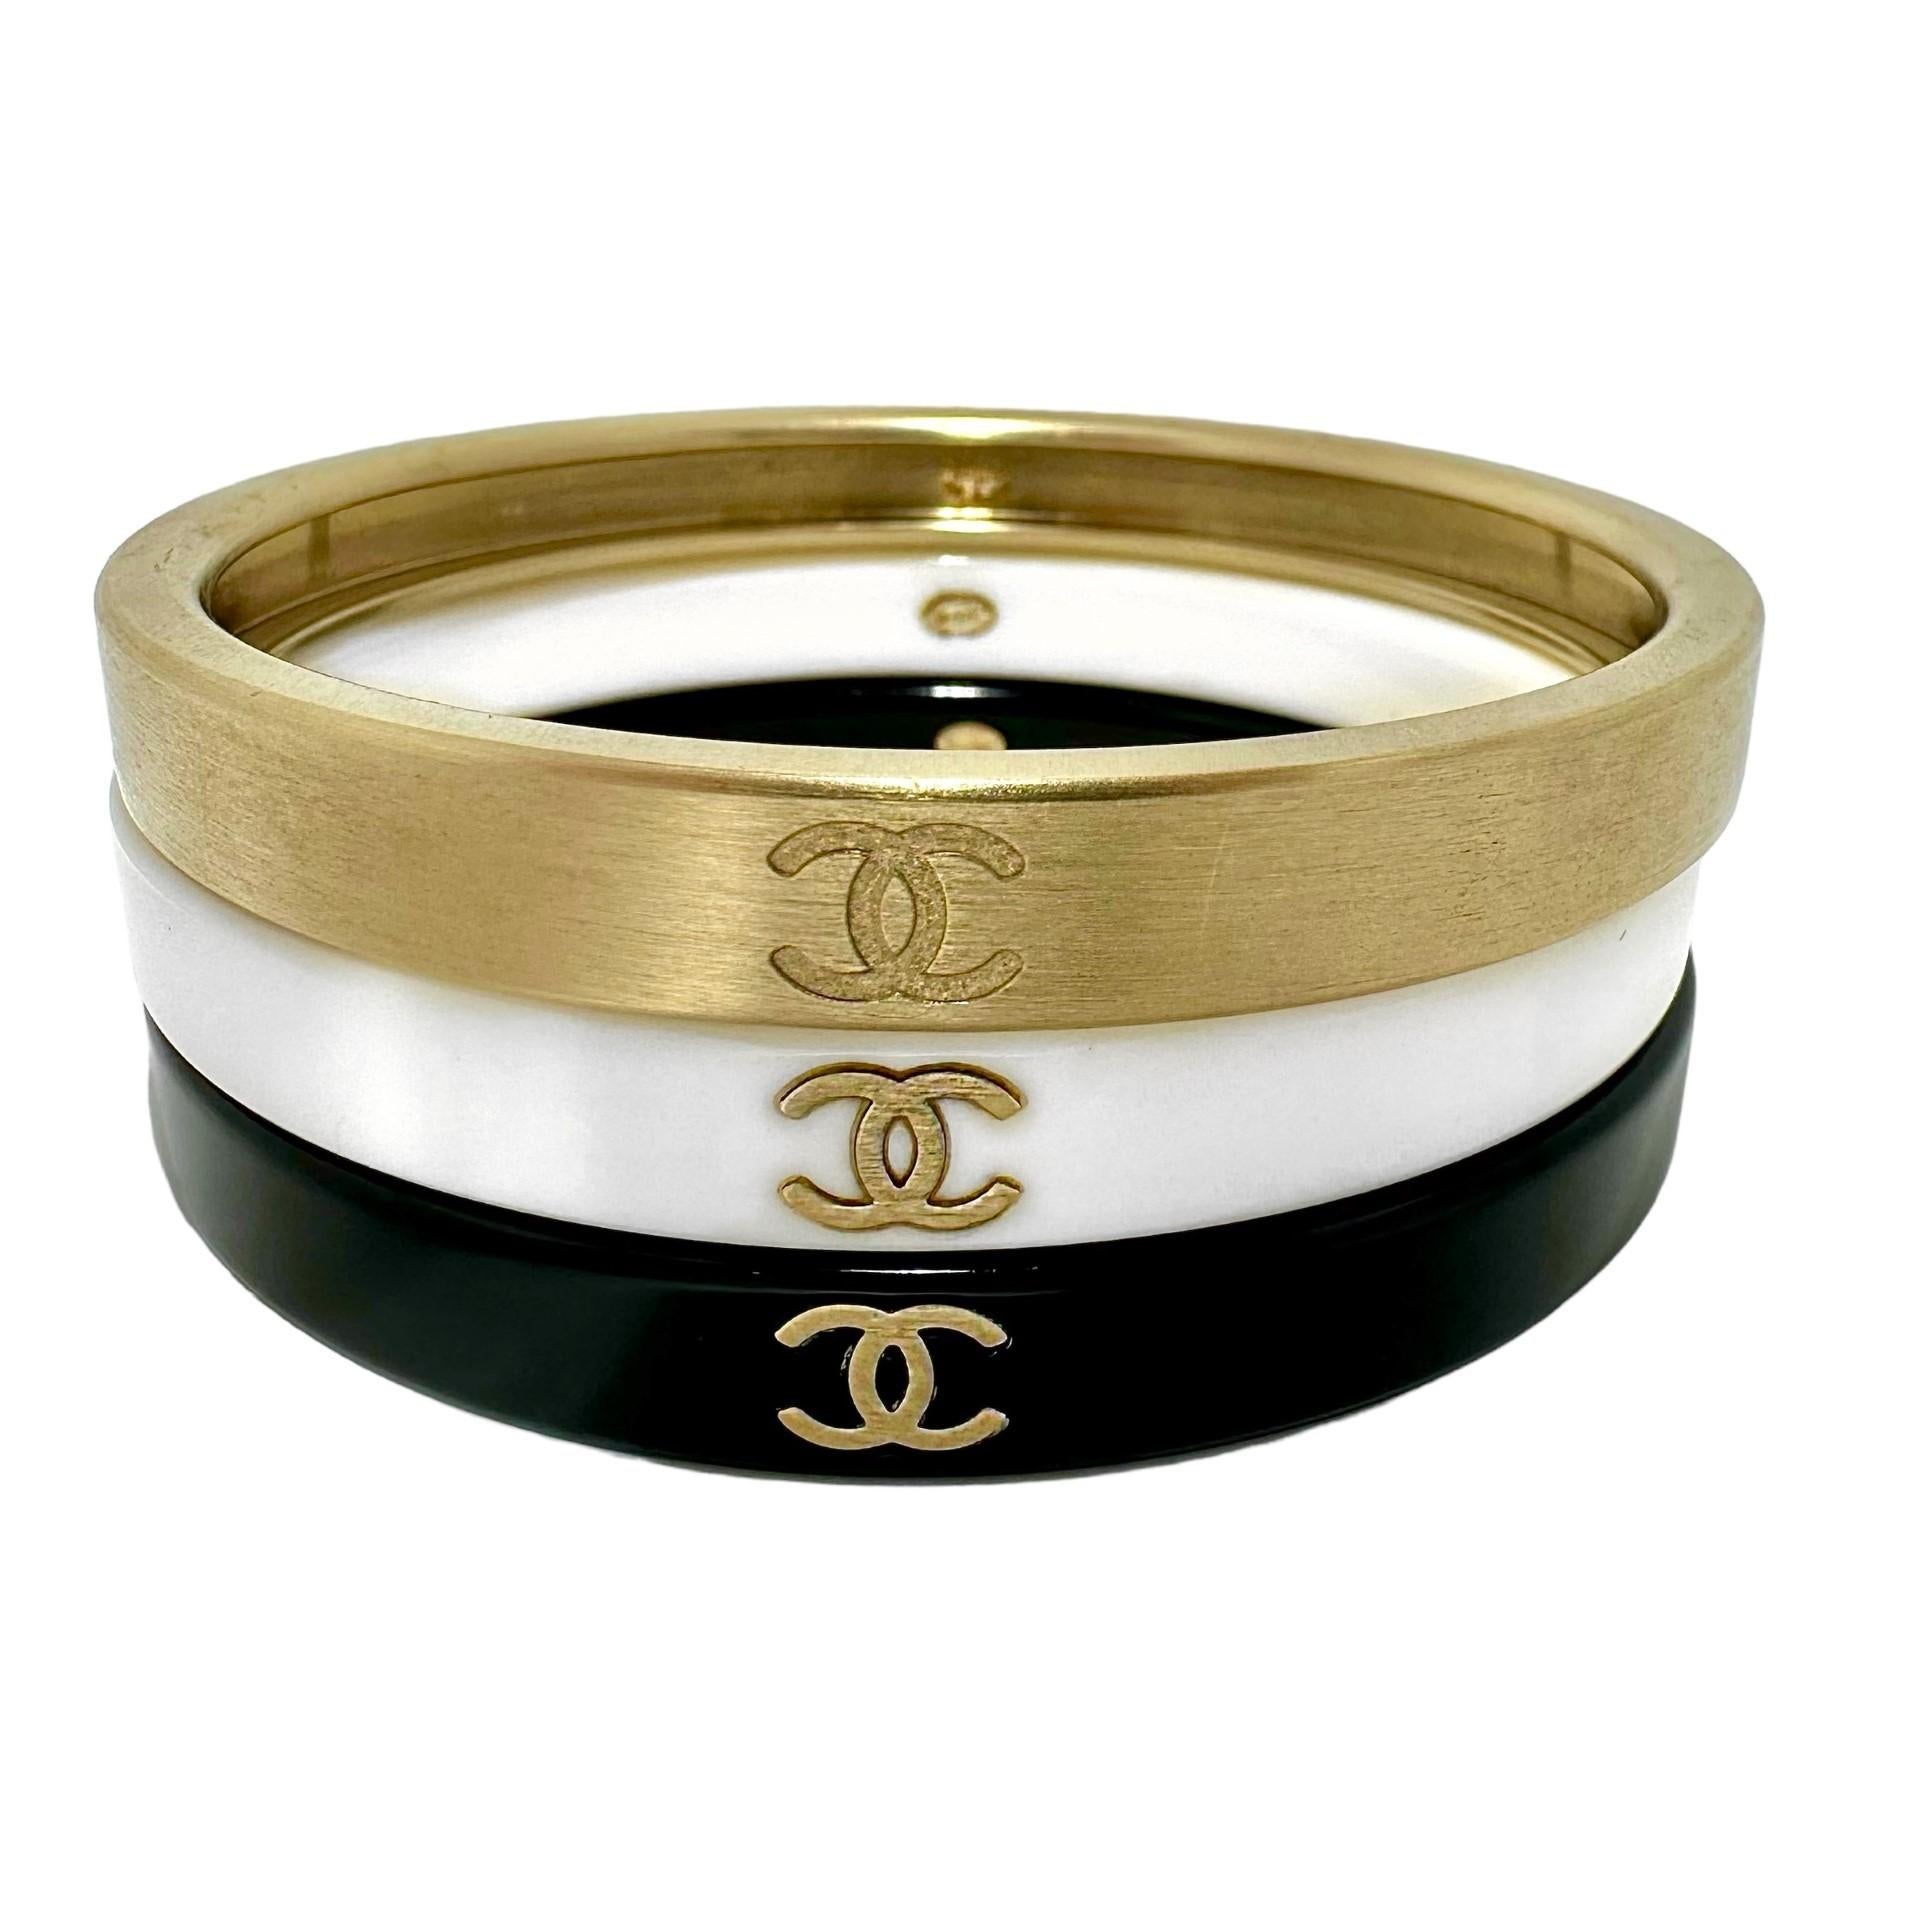 Dieses wunderschöne Chanel-Set im Vintage-Stil wurde im Rahmen der Herbstkollektion 2010 veröffentlicht. Gefertigt aus goldfarbenem, gebürstetem Metall und Harz. Jedes der drei Armbänder ist an drei Stellen mit dem CHANEL Doppel-C-Logo geprägt. Im